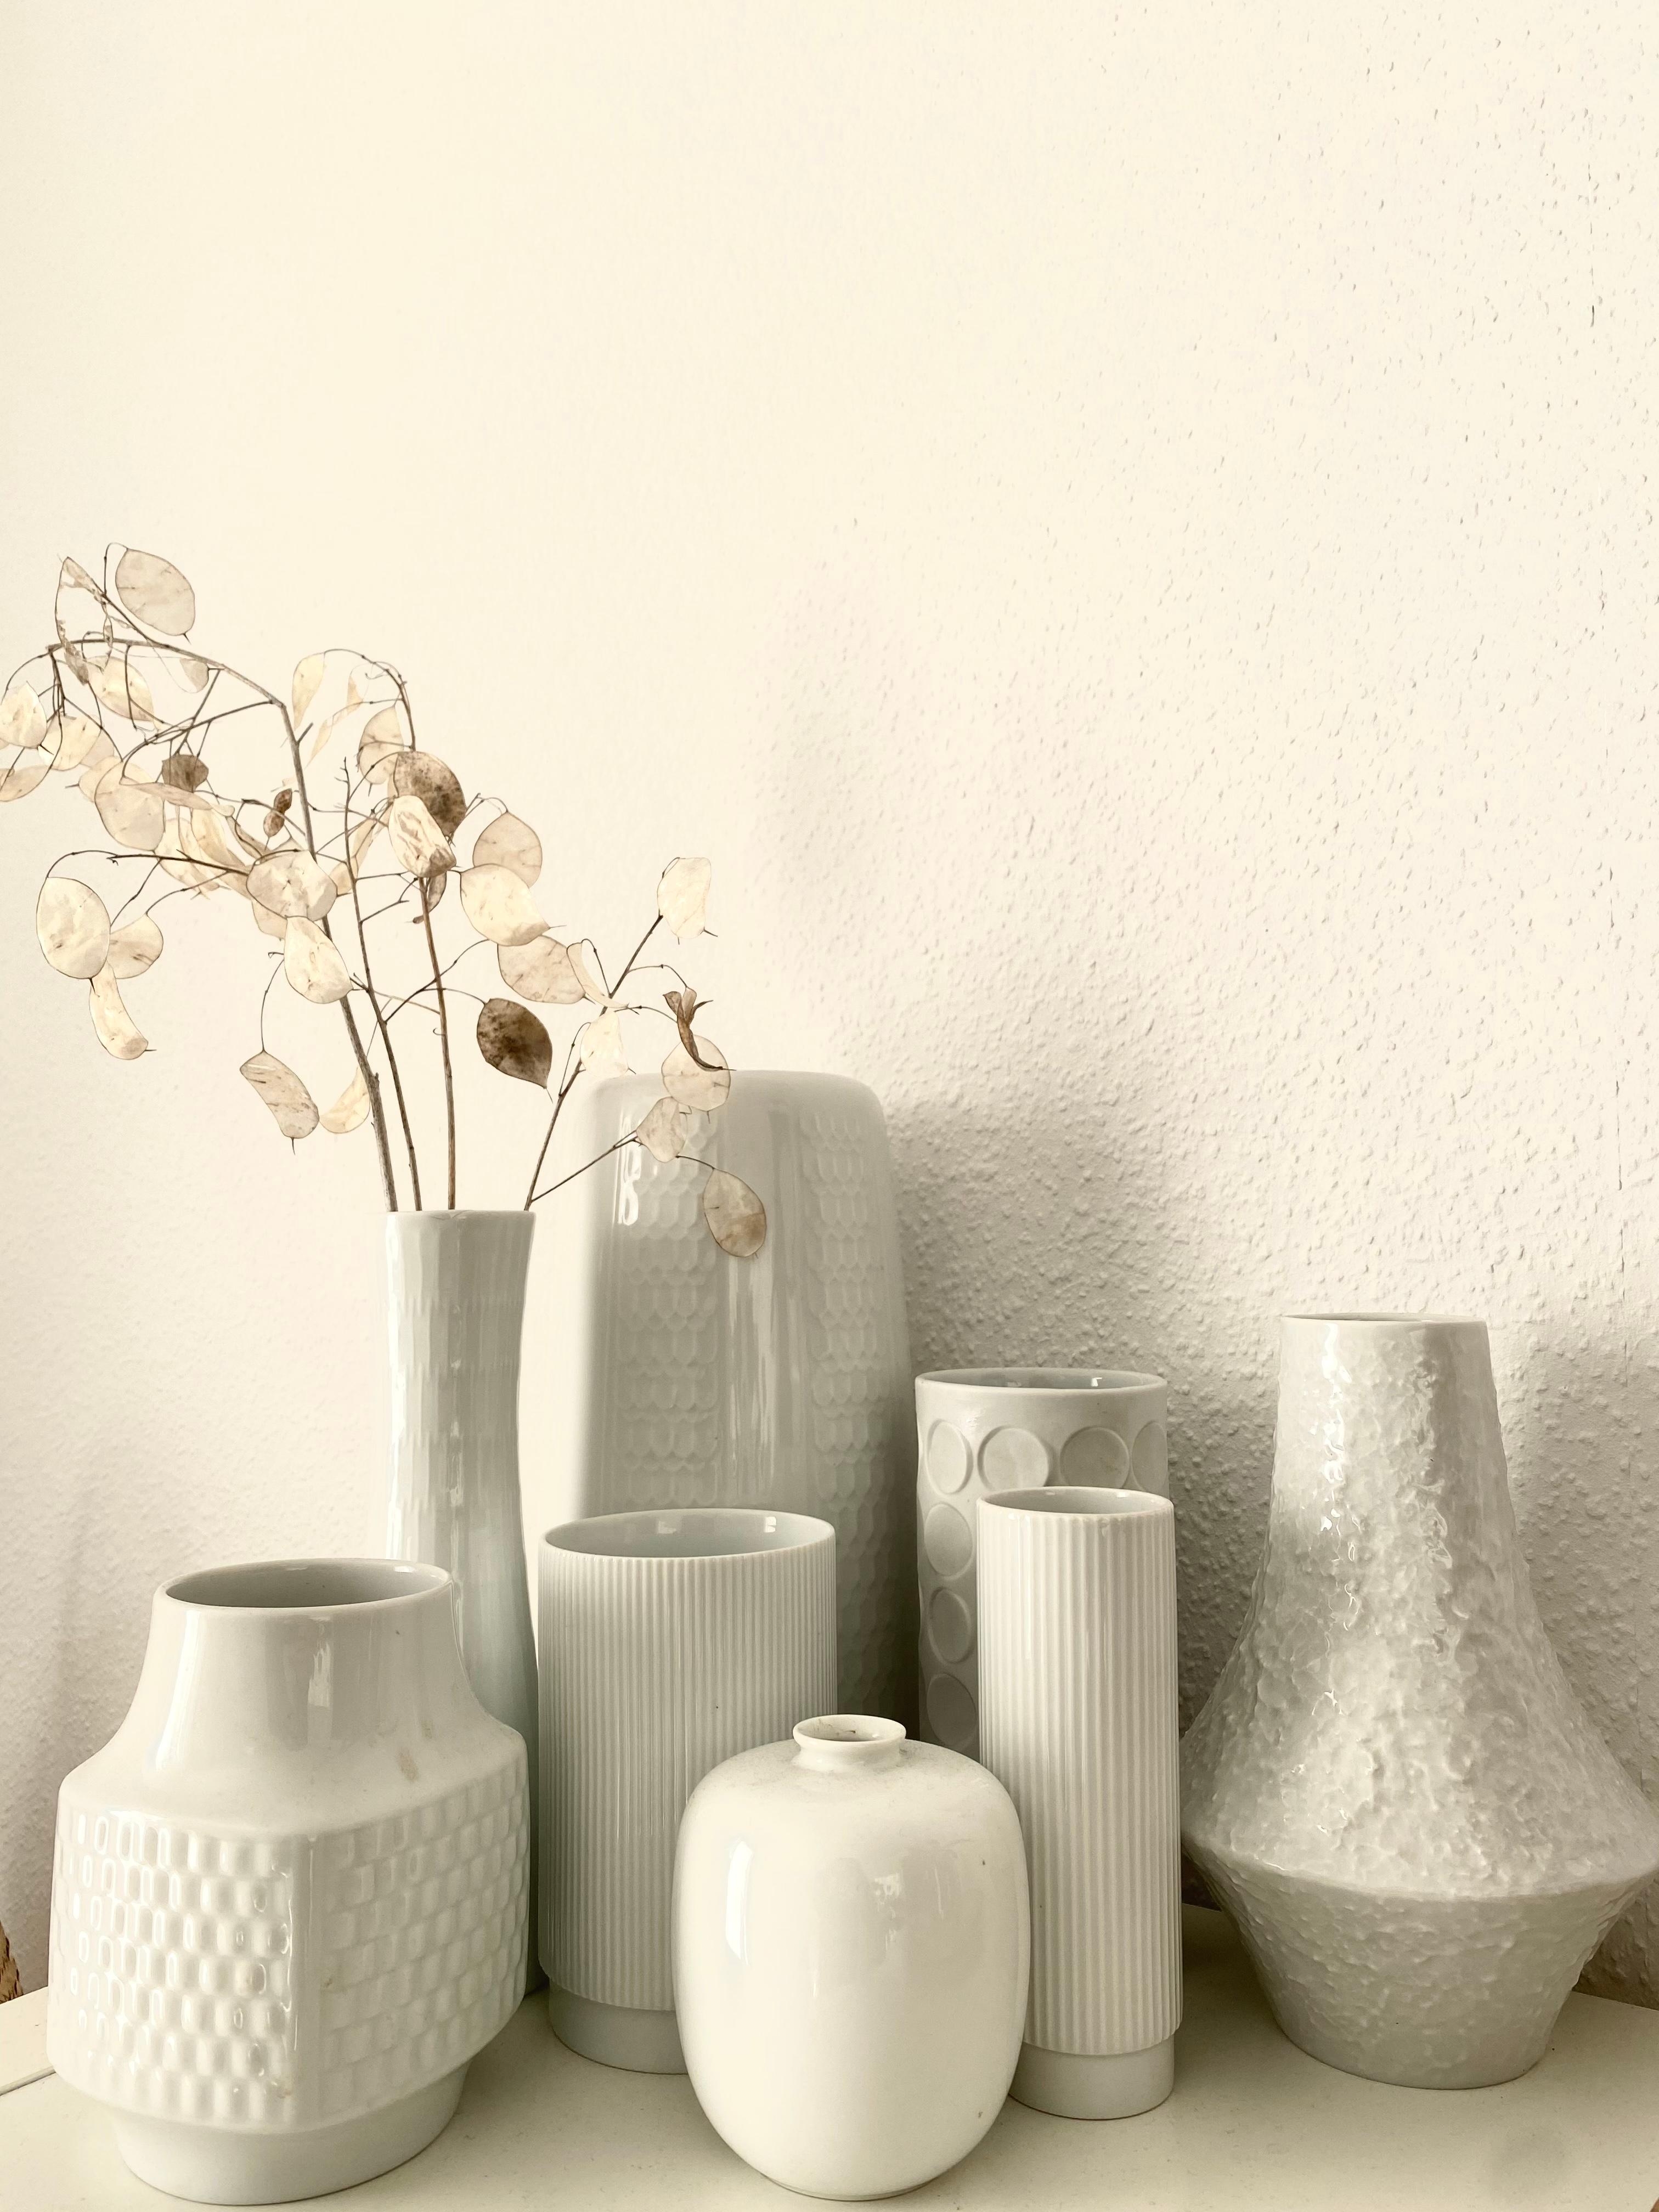 Sammelleidenschaft für Vasen von meiner Oma geerbt 🤍
#rosenthal #winterling #hutschenreuther #porzellan #strukturen